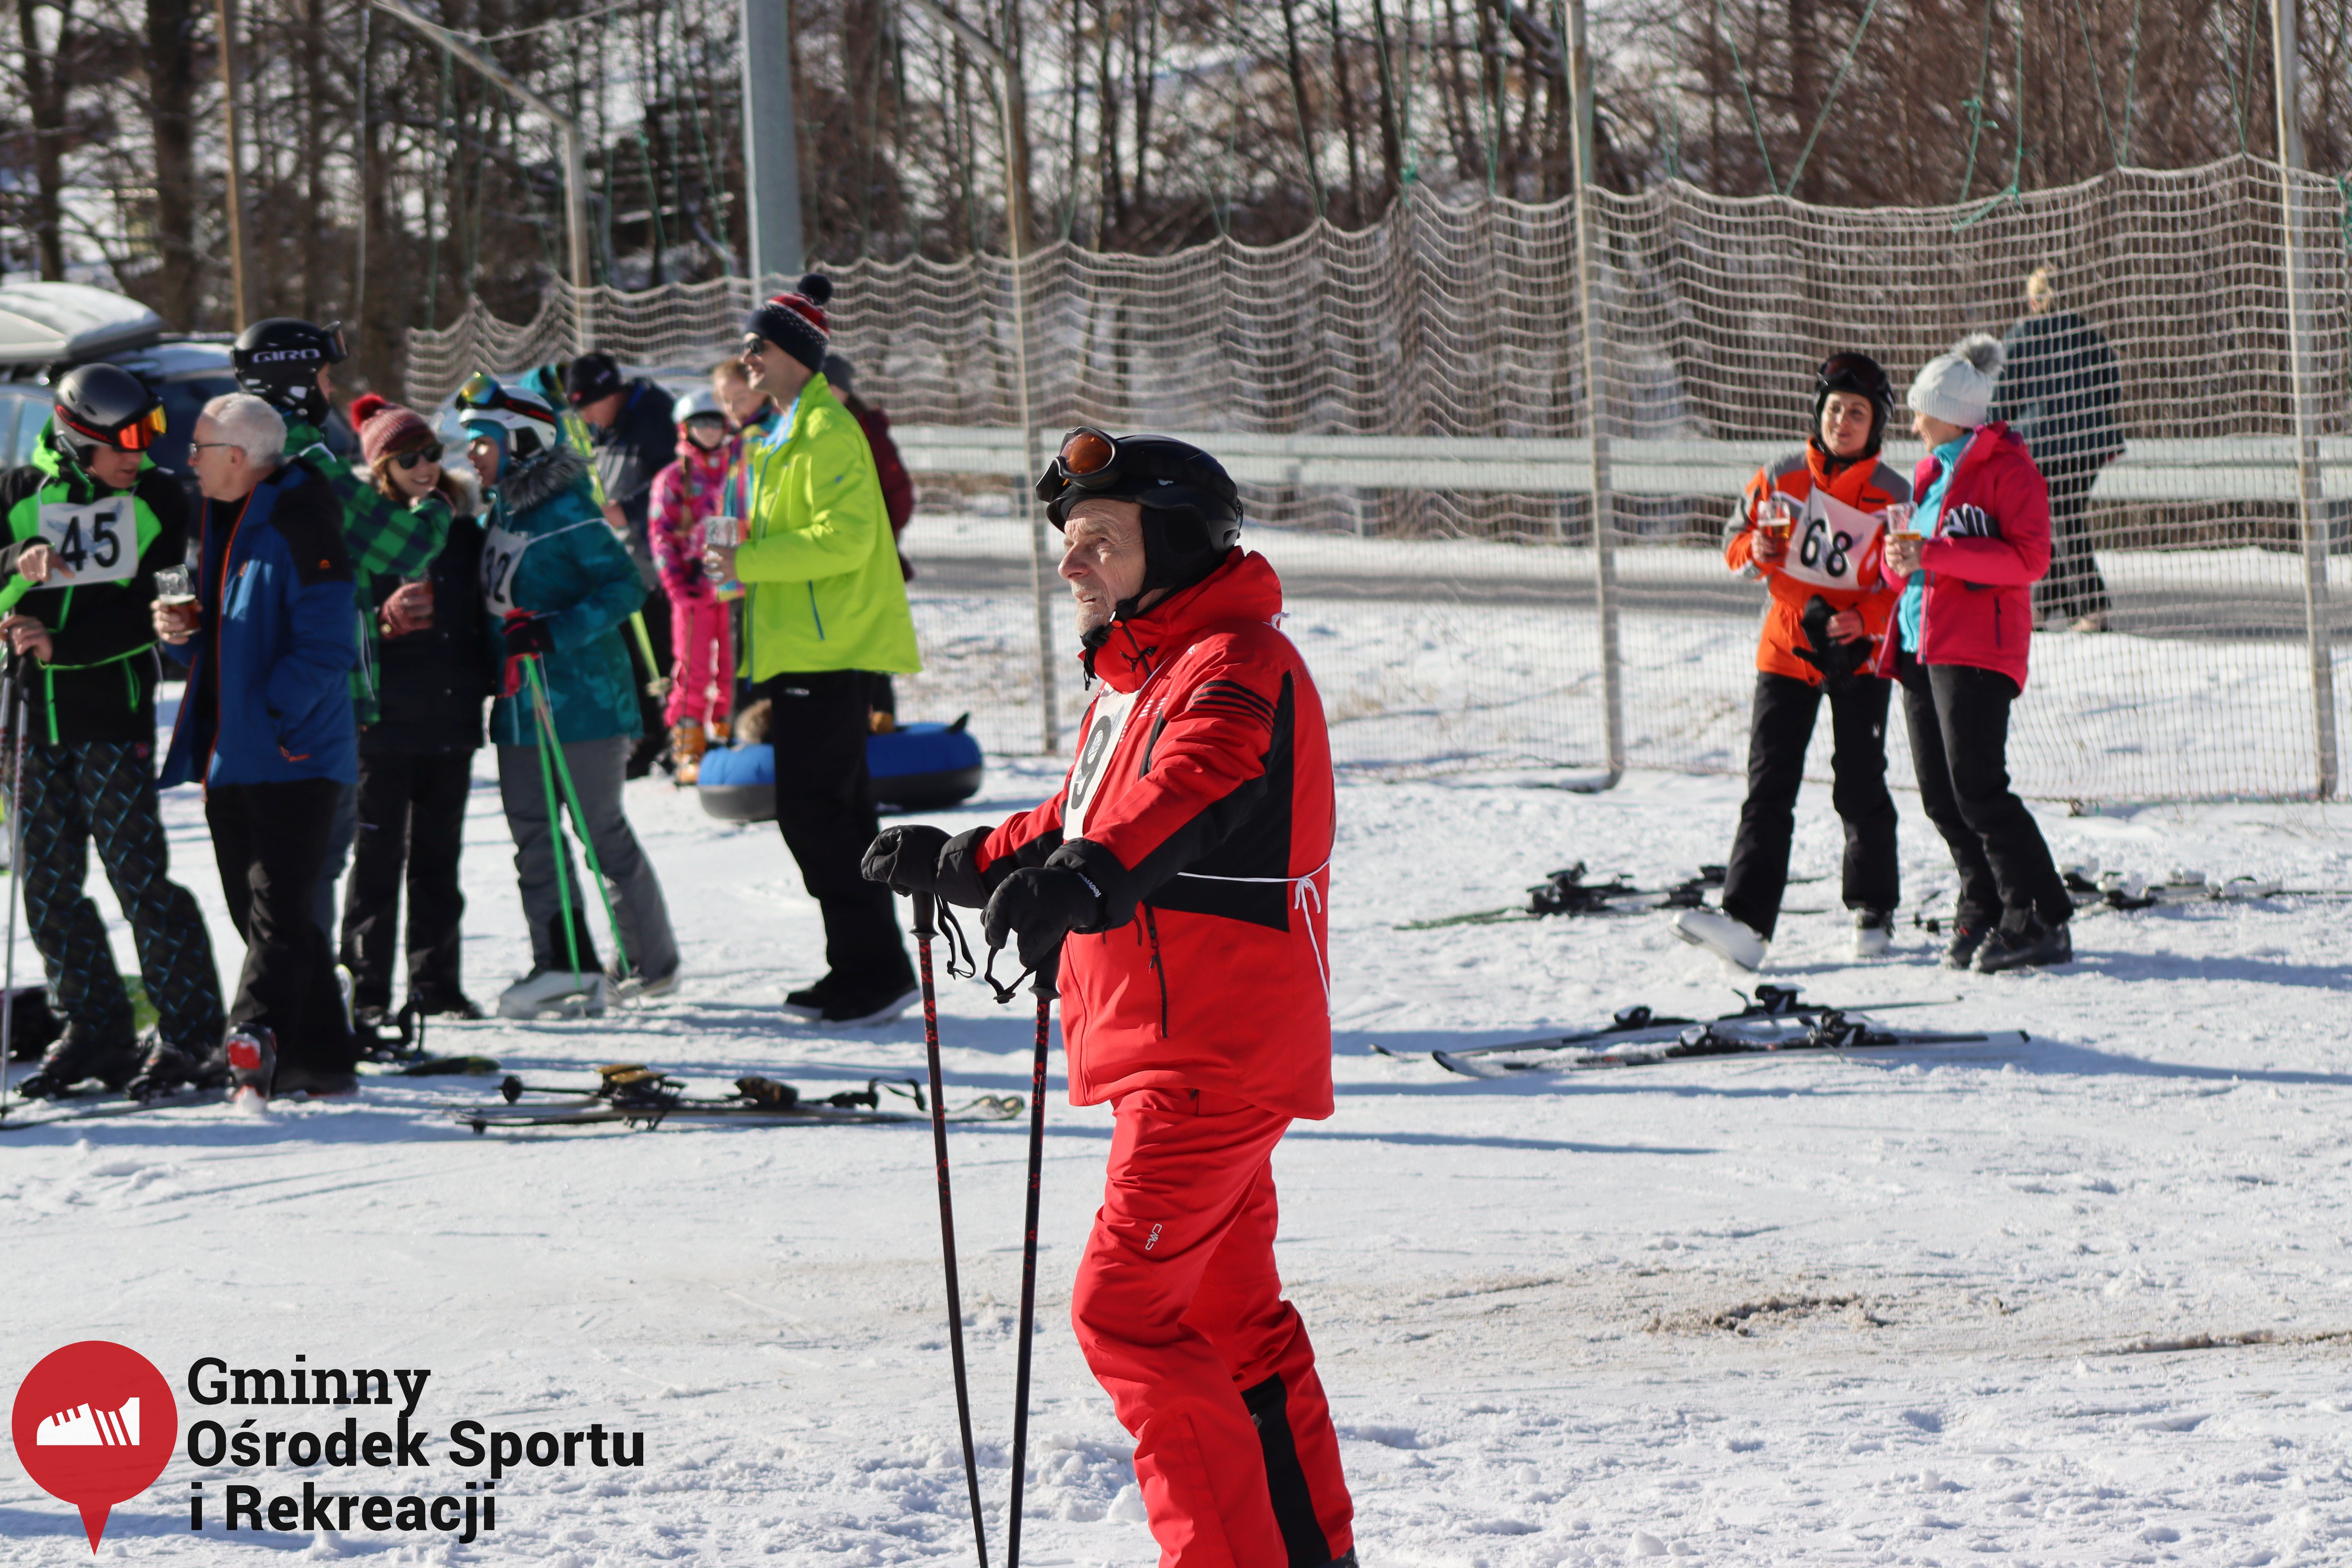 2022.02.12 - 18. Mistrzostwa Gminy Woszakowice w narciarstwie081.jpg - 2,35 MB